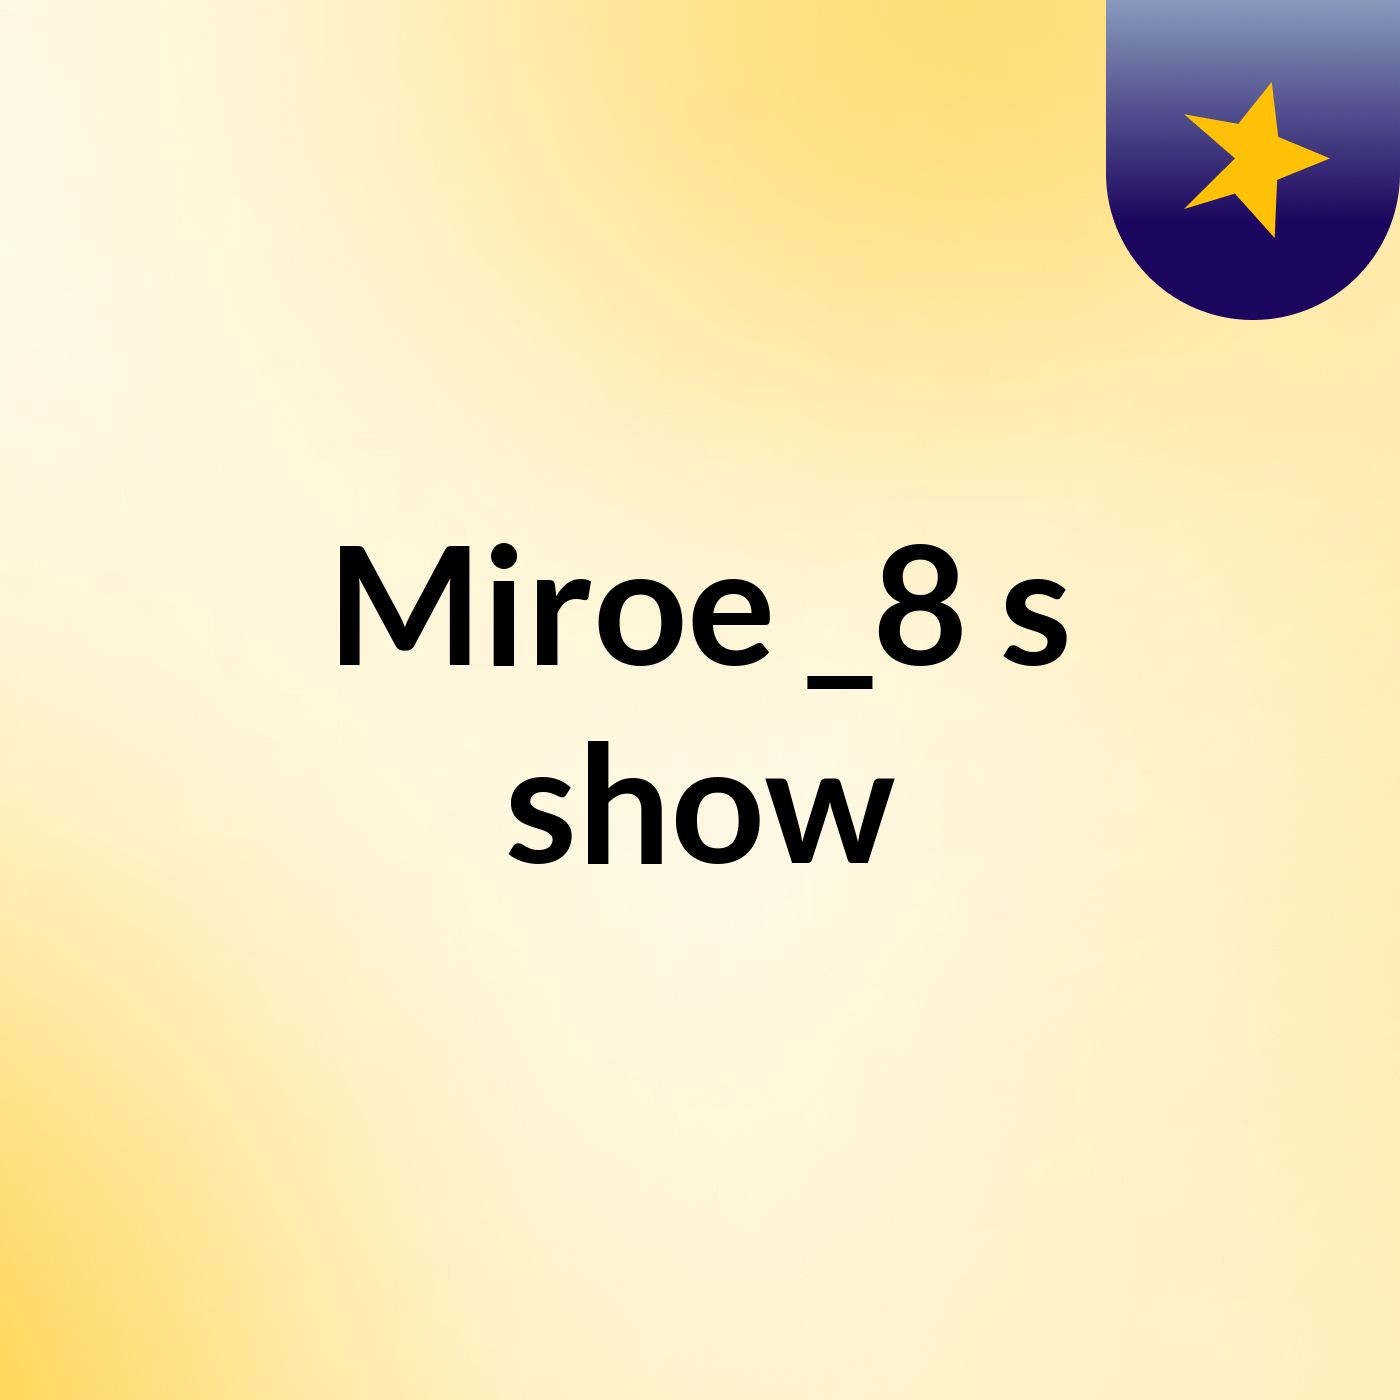 Miroe _8's show